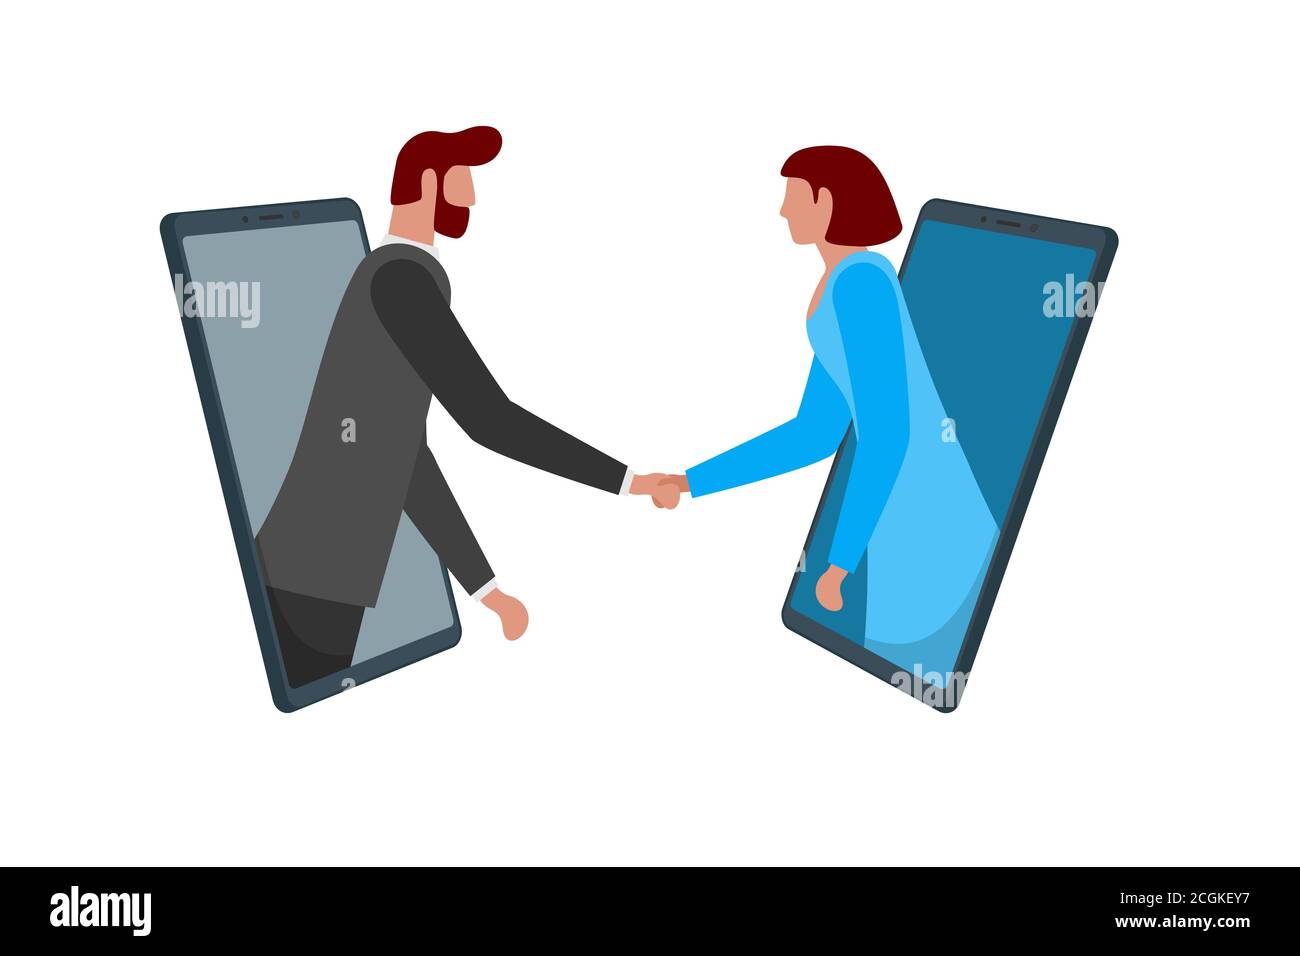 Geschäftsmann und Frau schütteln Hände durch Smartphone-Bildschirme als Online-Deal-Vereinbarung. Mobile Konferenz Netzwerk Meeting und Handshake. Zwei-Personen-Fernverhandlungskonzept. Vektorgrafik Stock Vektor